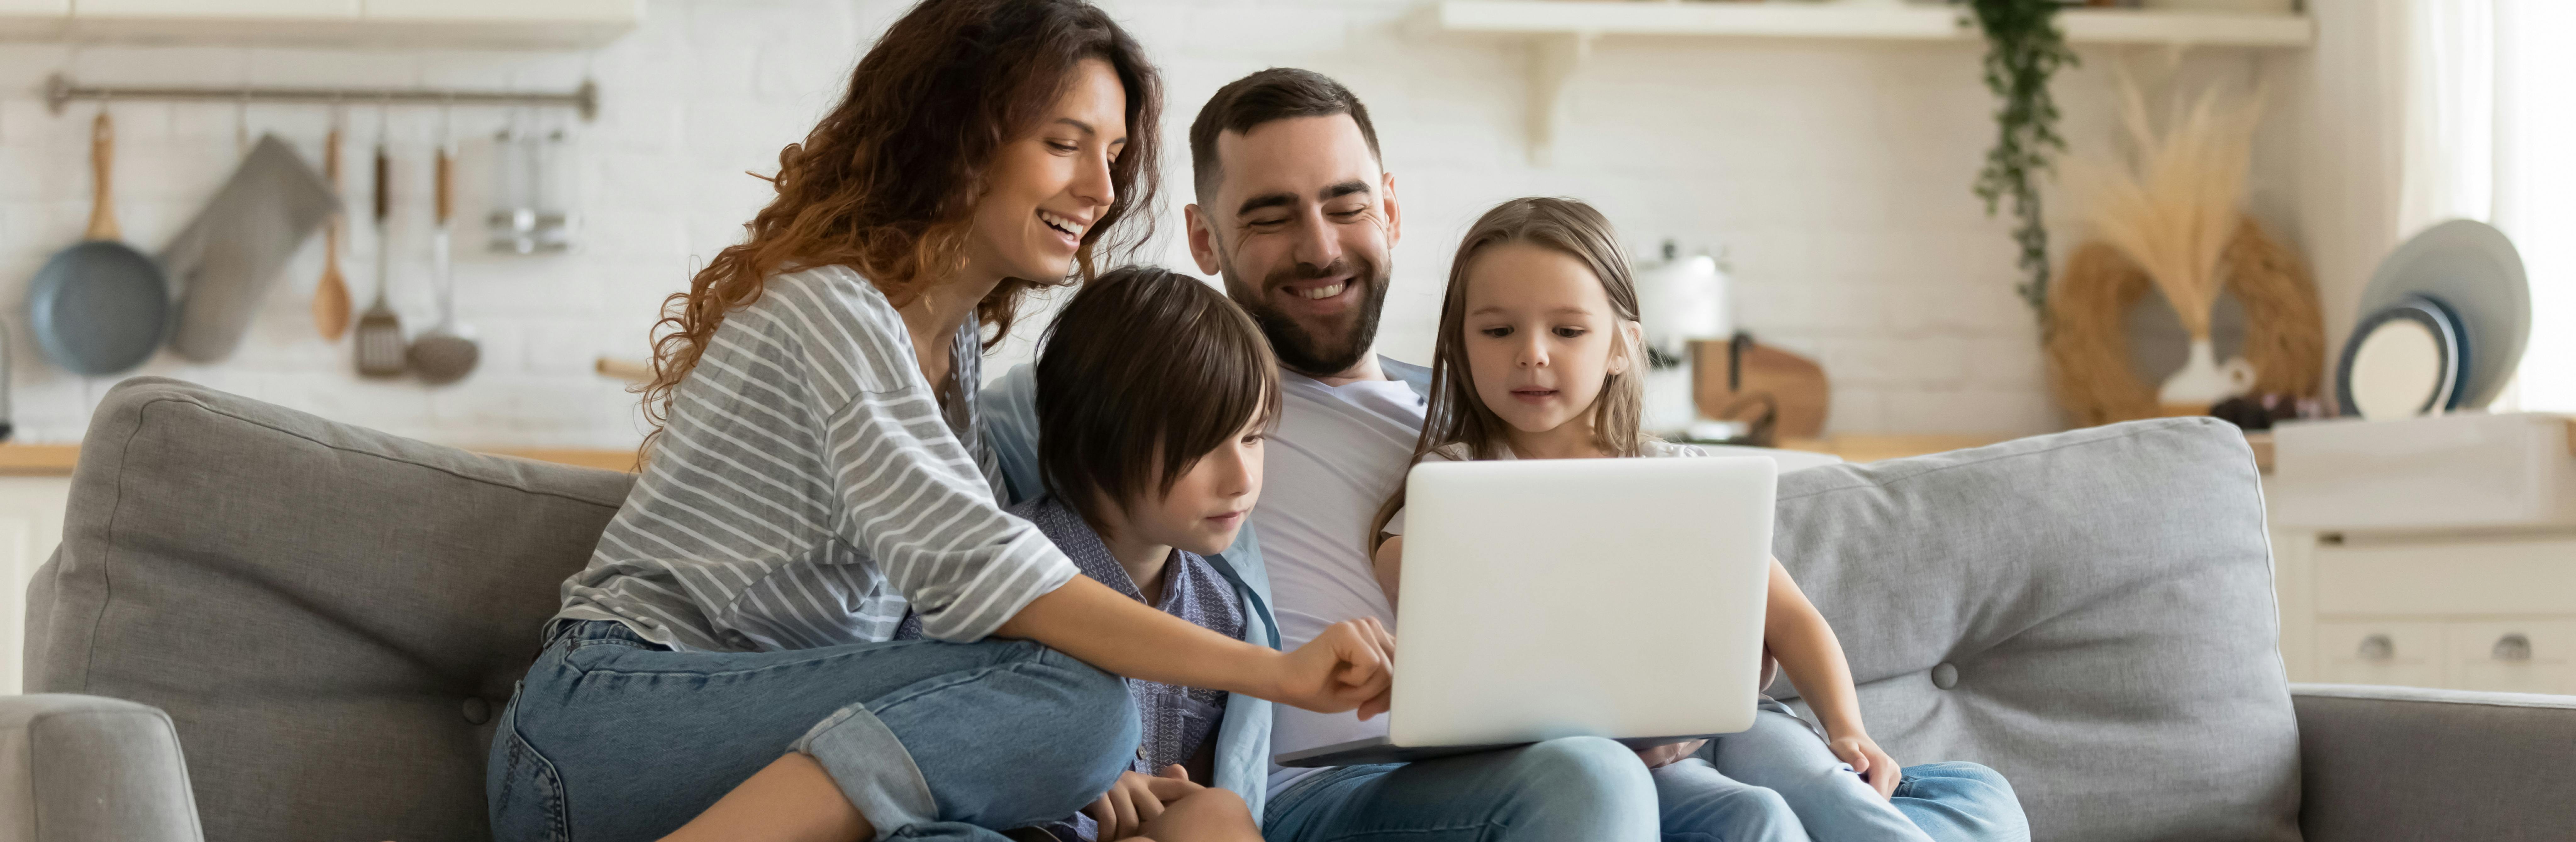 Zwei Eltern und ihr kleiner Junge und ihr kleines Mädchen auf einer Couch schauen auf einen Laptop